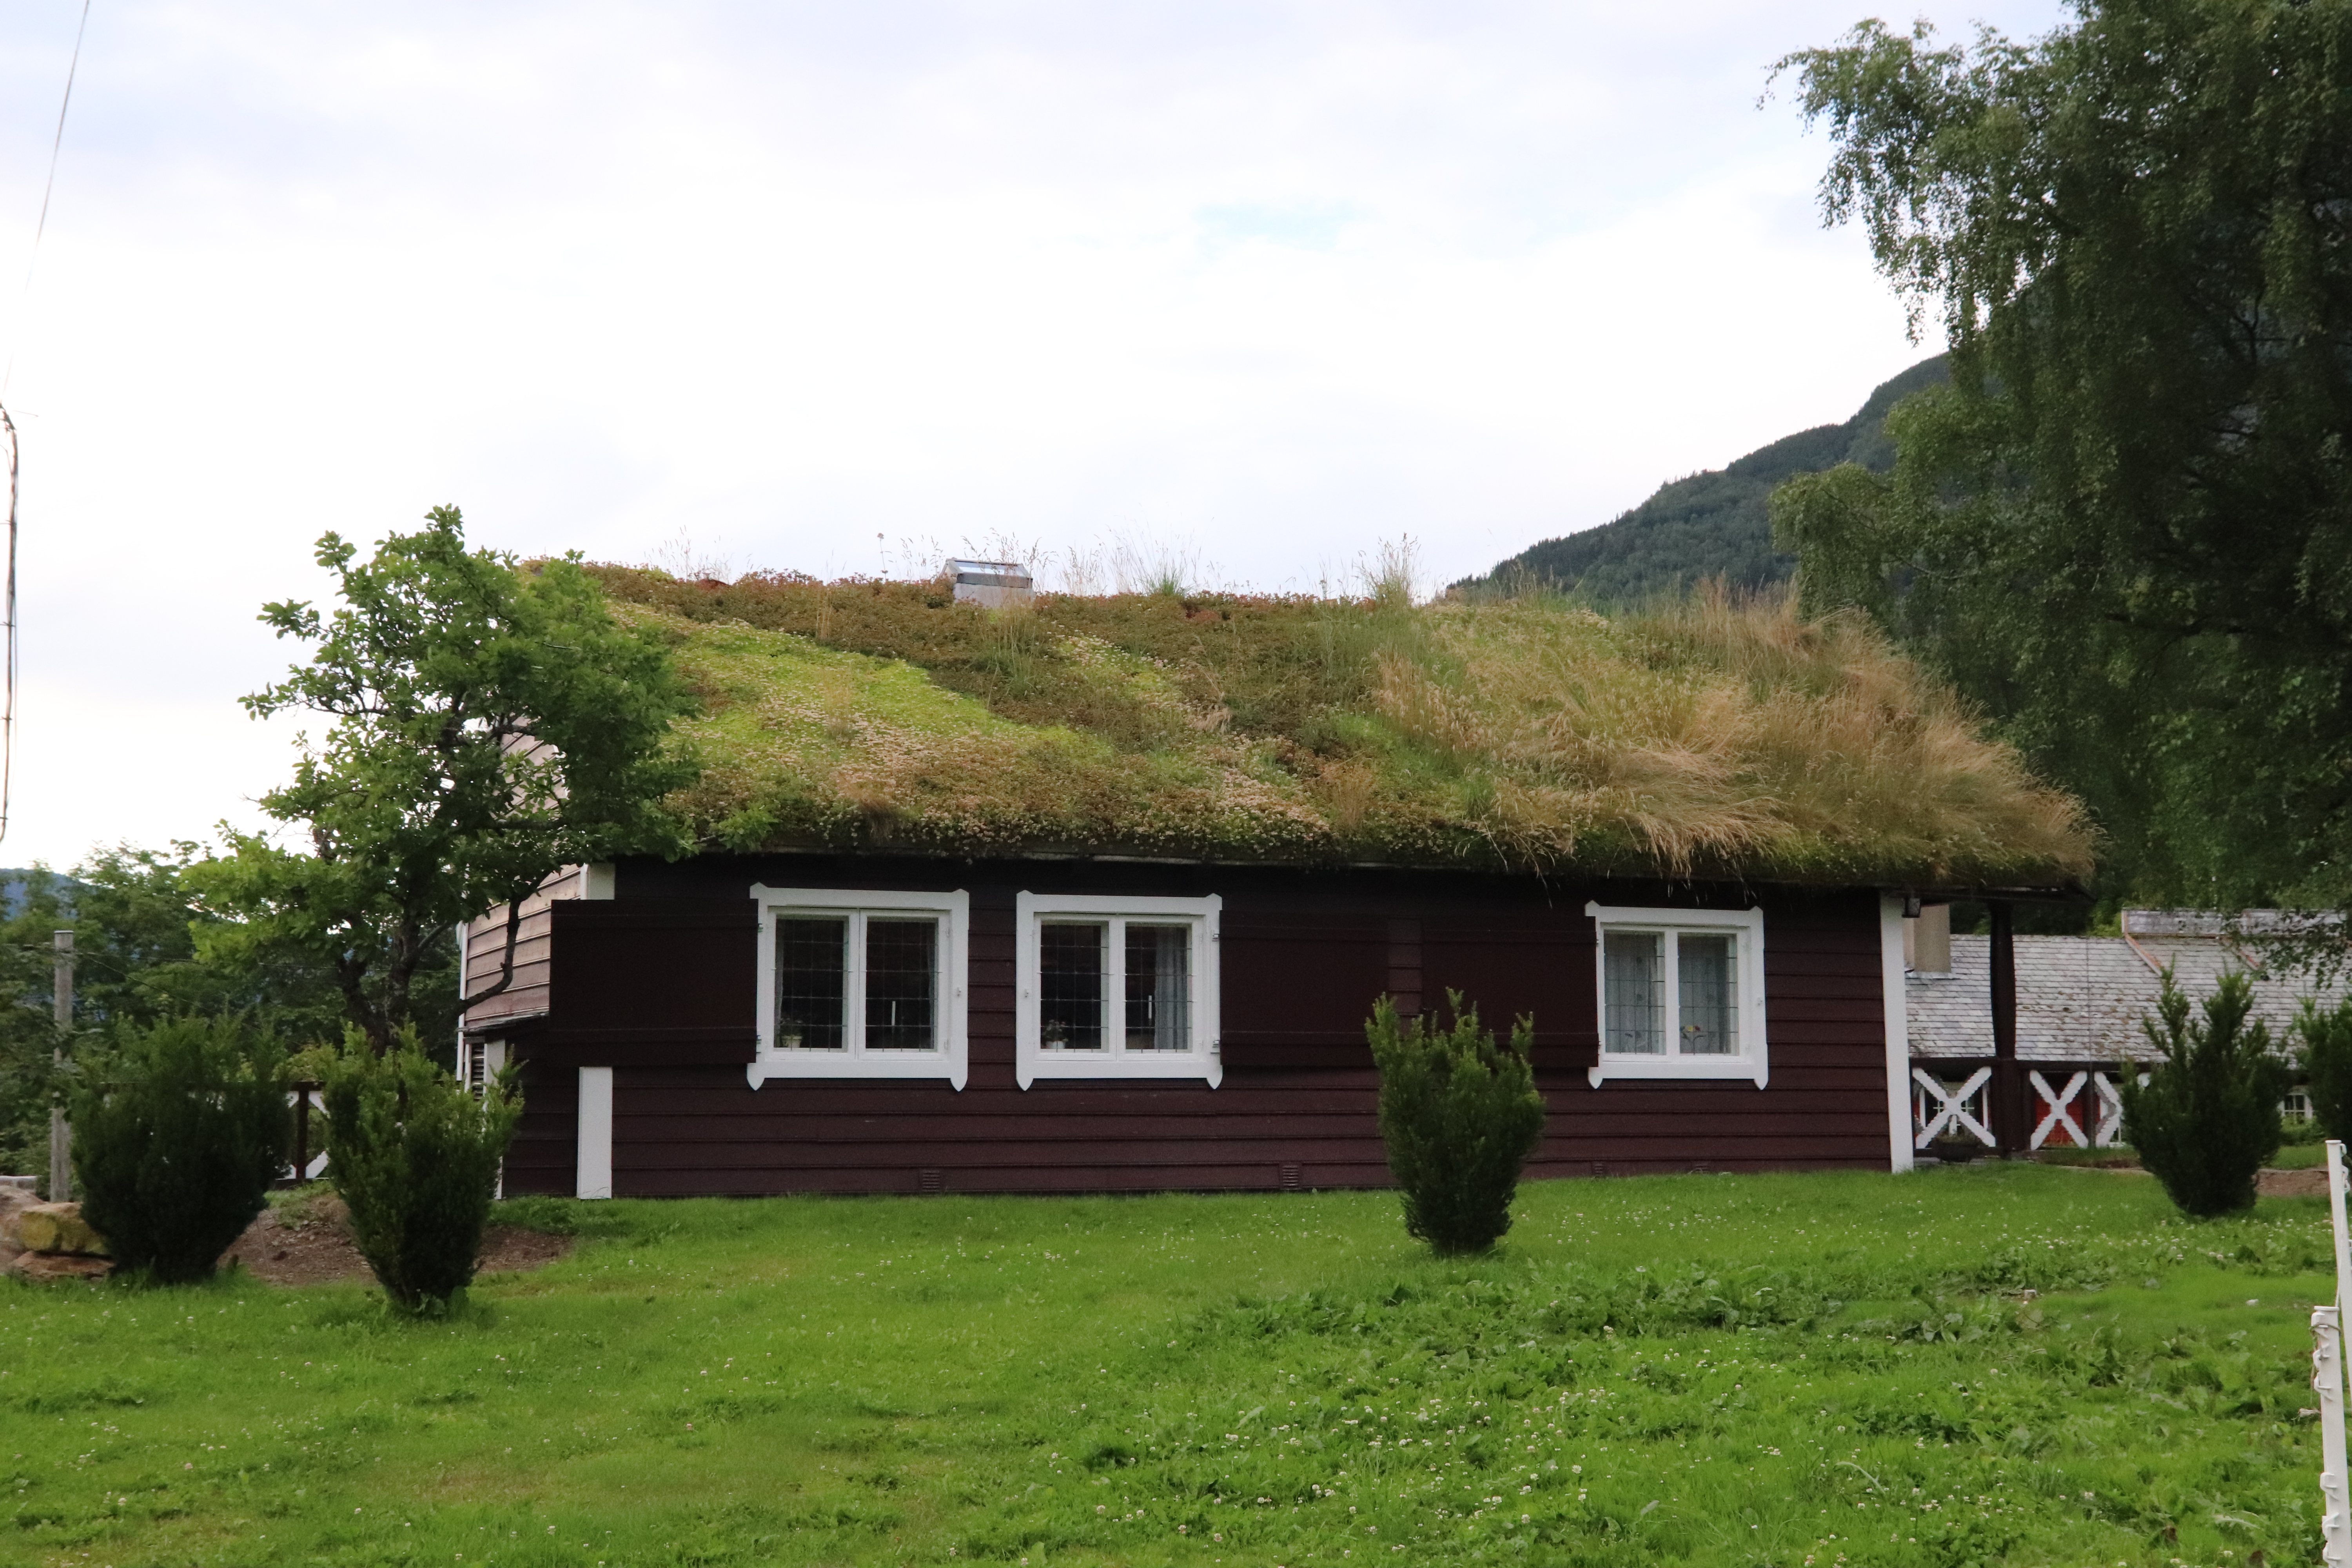 typická norská chata se zatravněnou střechou